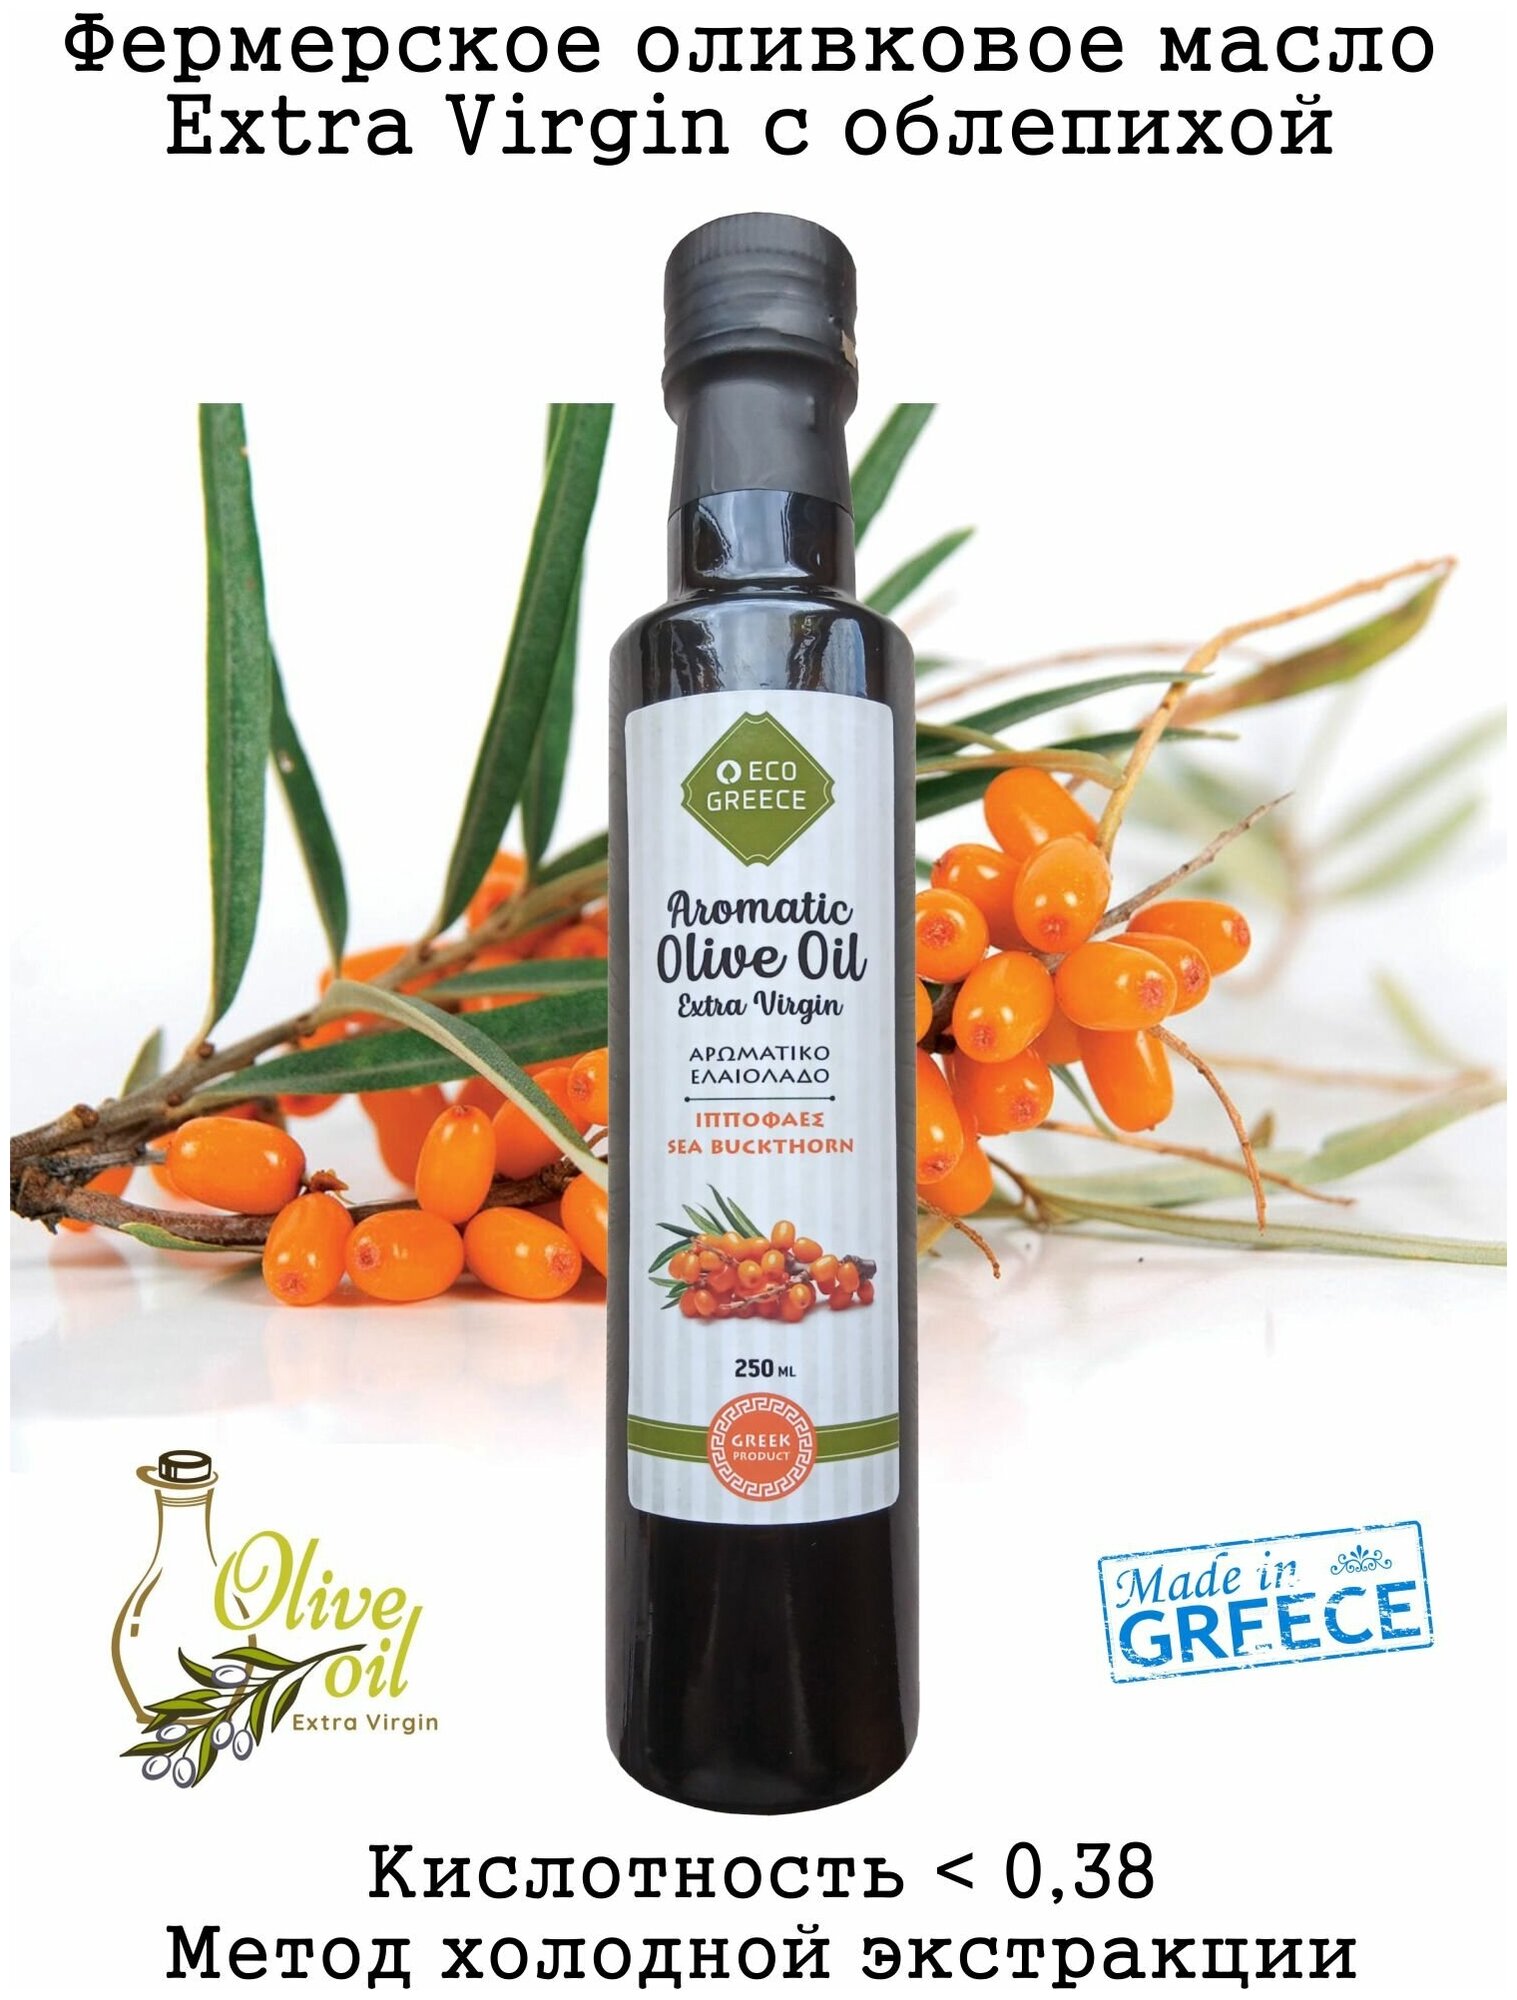 Ароматизированное фермерское оливковое масло Extra Virgin с облепихой, 250 мл